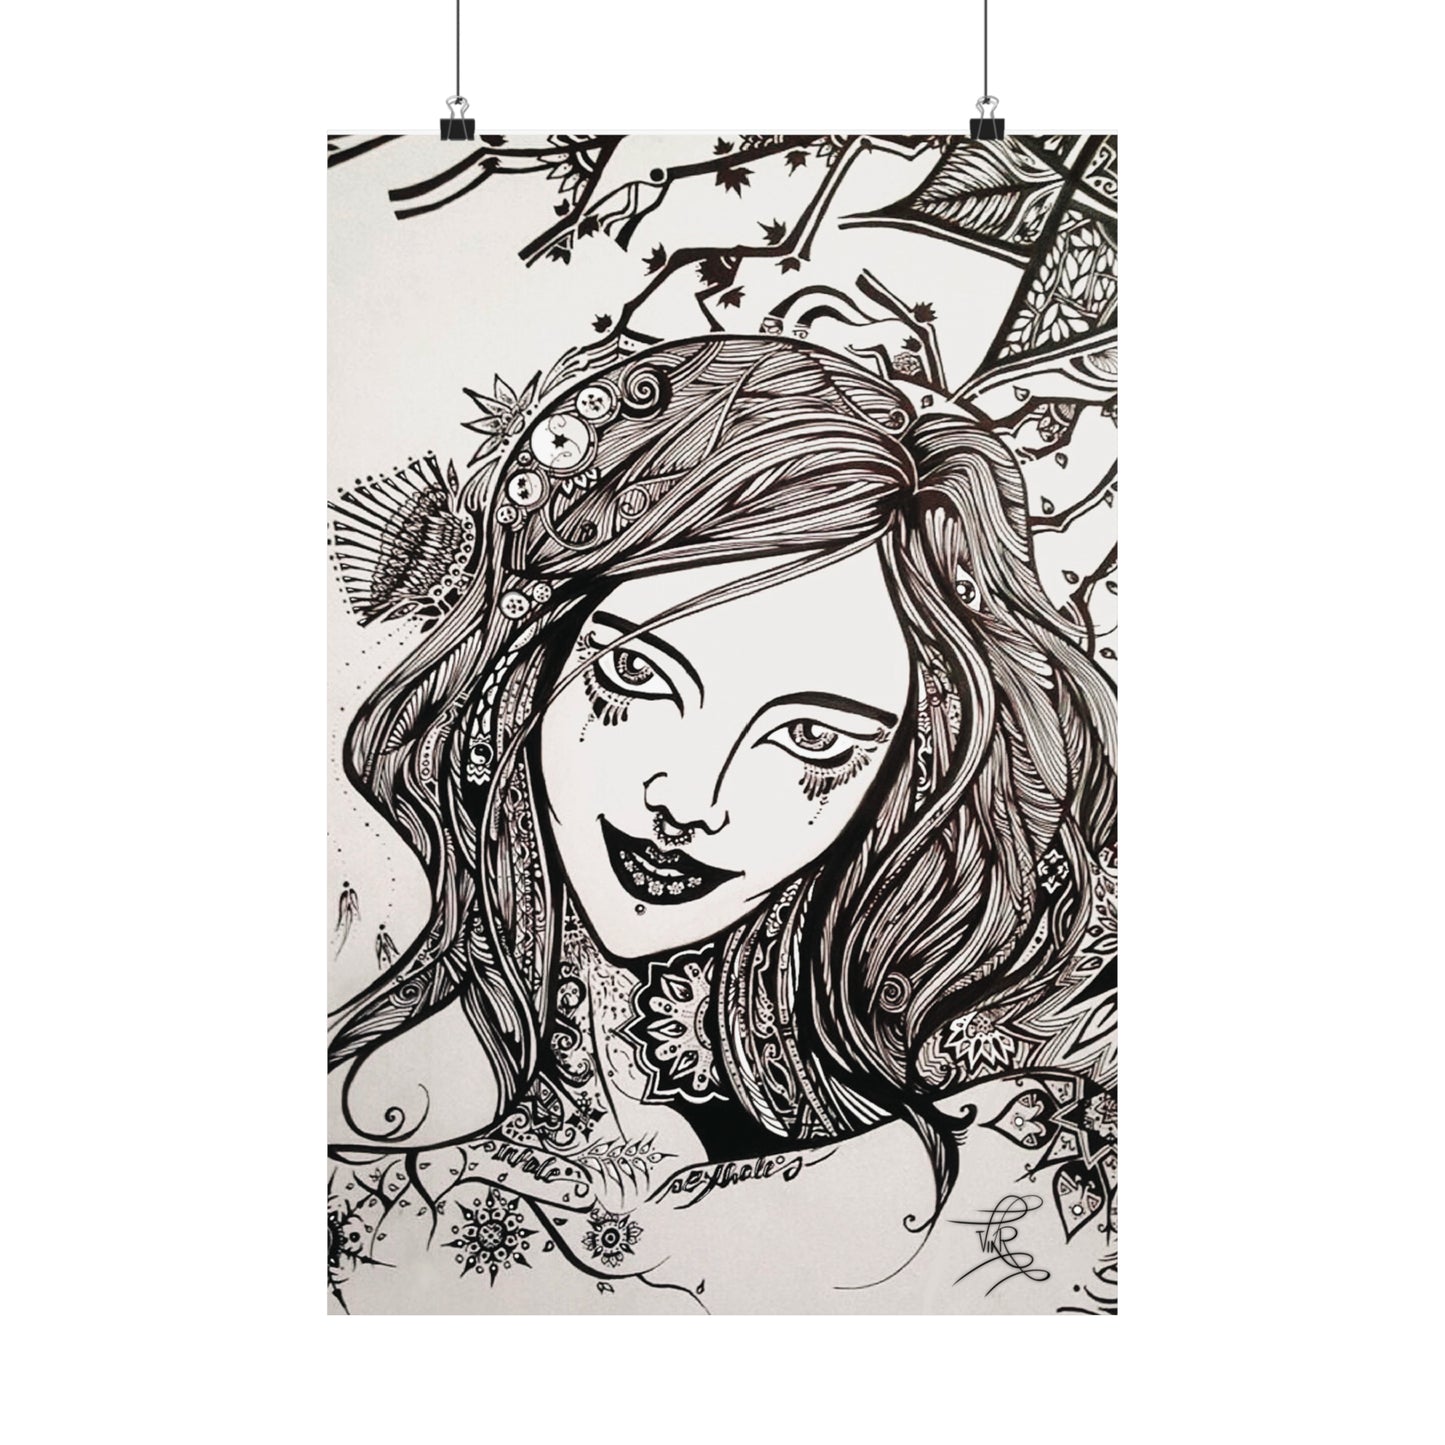 Ceres Goddess of the Harvest Premium Matte Art Print Poster